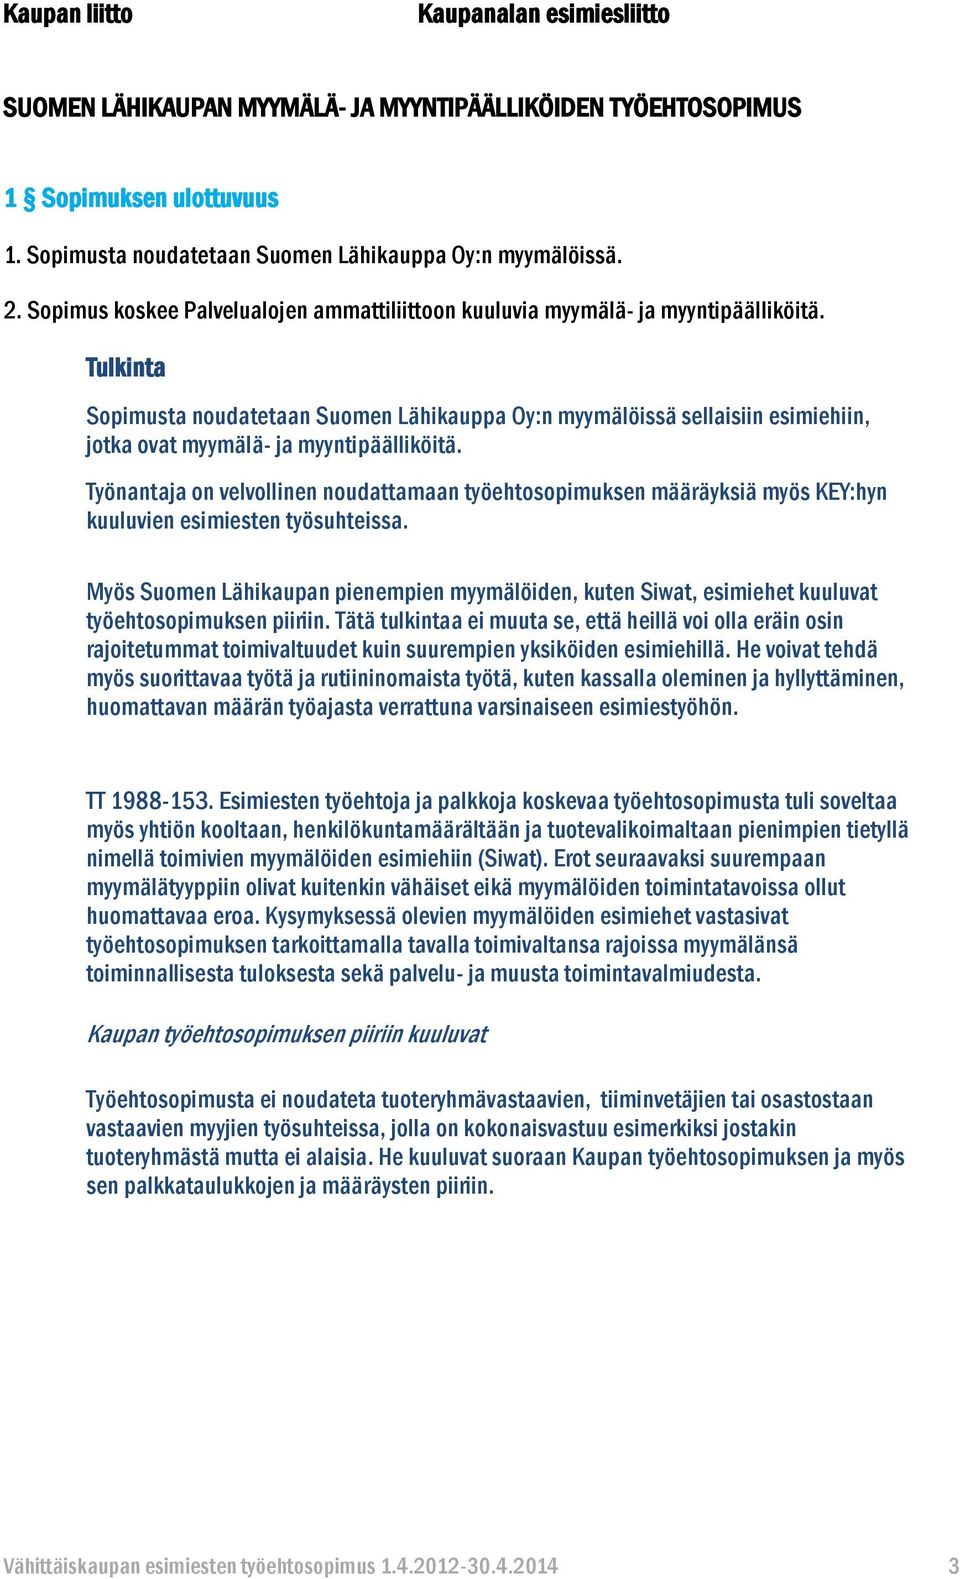 Sopimusta noudatetaan Suomen Lähikauppa Oy:n myymälöissä sellaisiin esimiehiin, jotka ovat myymälä- ja myyntipäälliköitä.